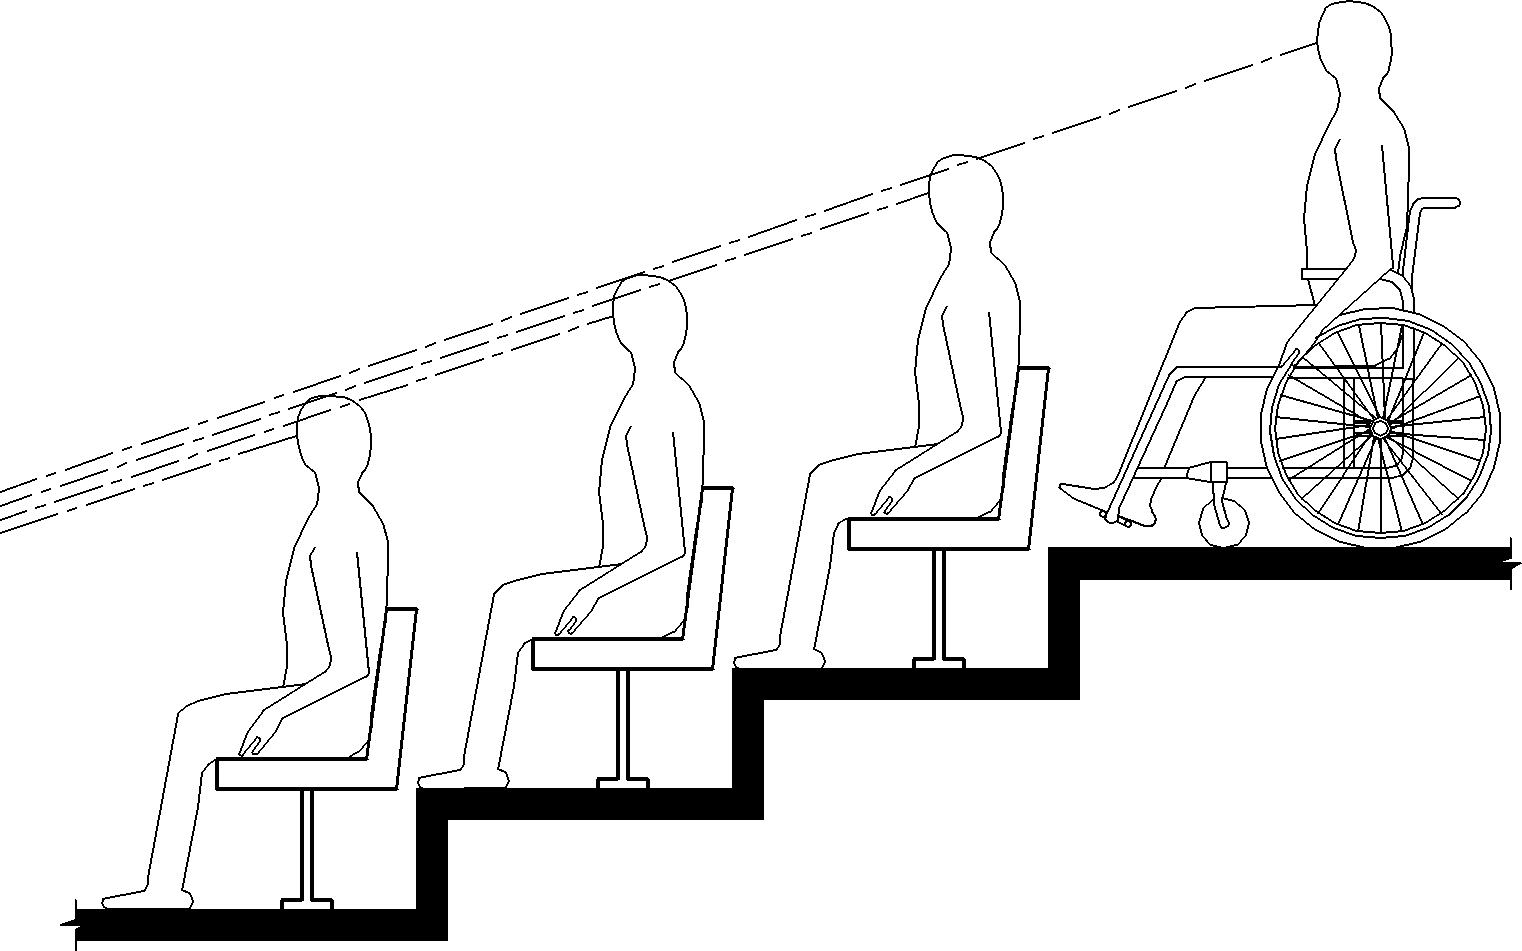 El dibujo de elevación muestra a una persona usando una silla de ruedas en un nivel superior de asientos escalonados que tiene una línea de visión entre las cabezas de los espectadores sentados al frente